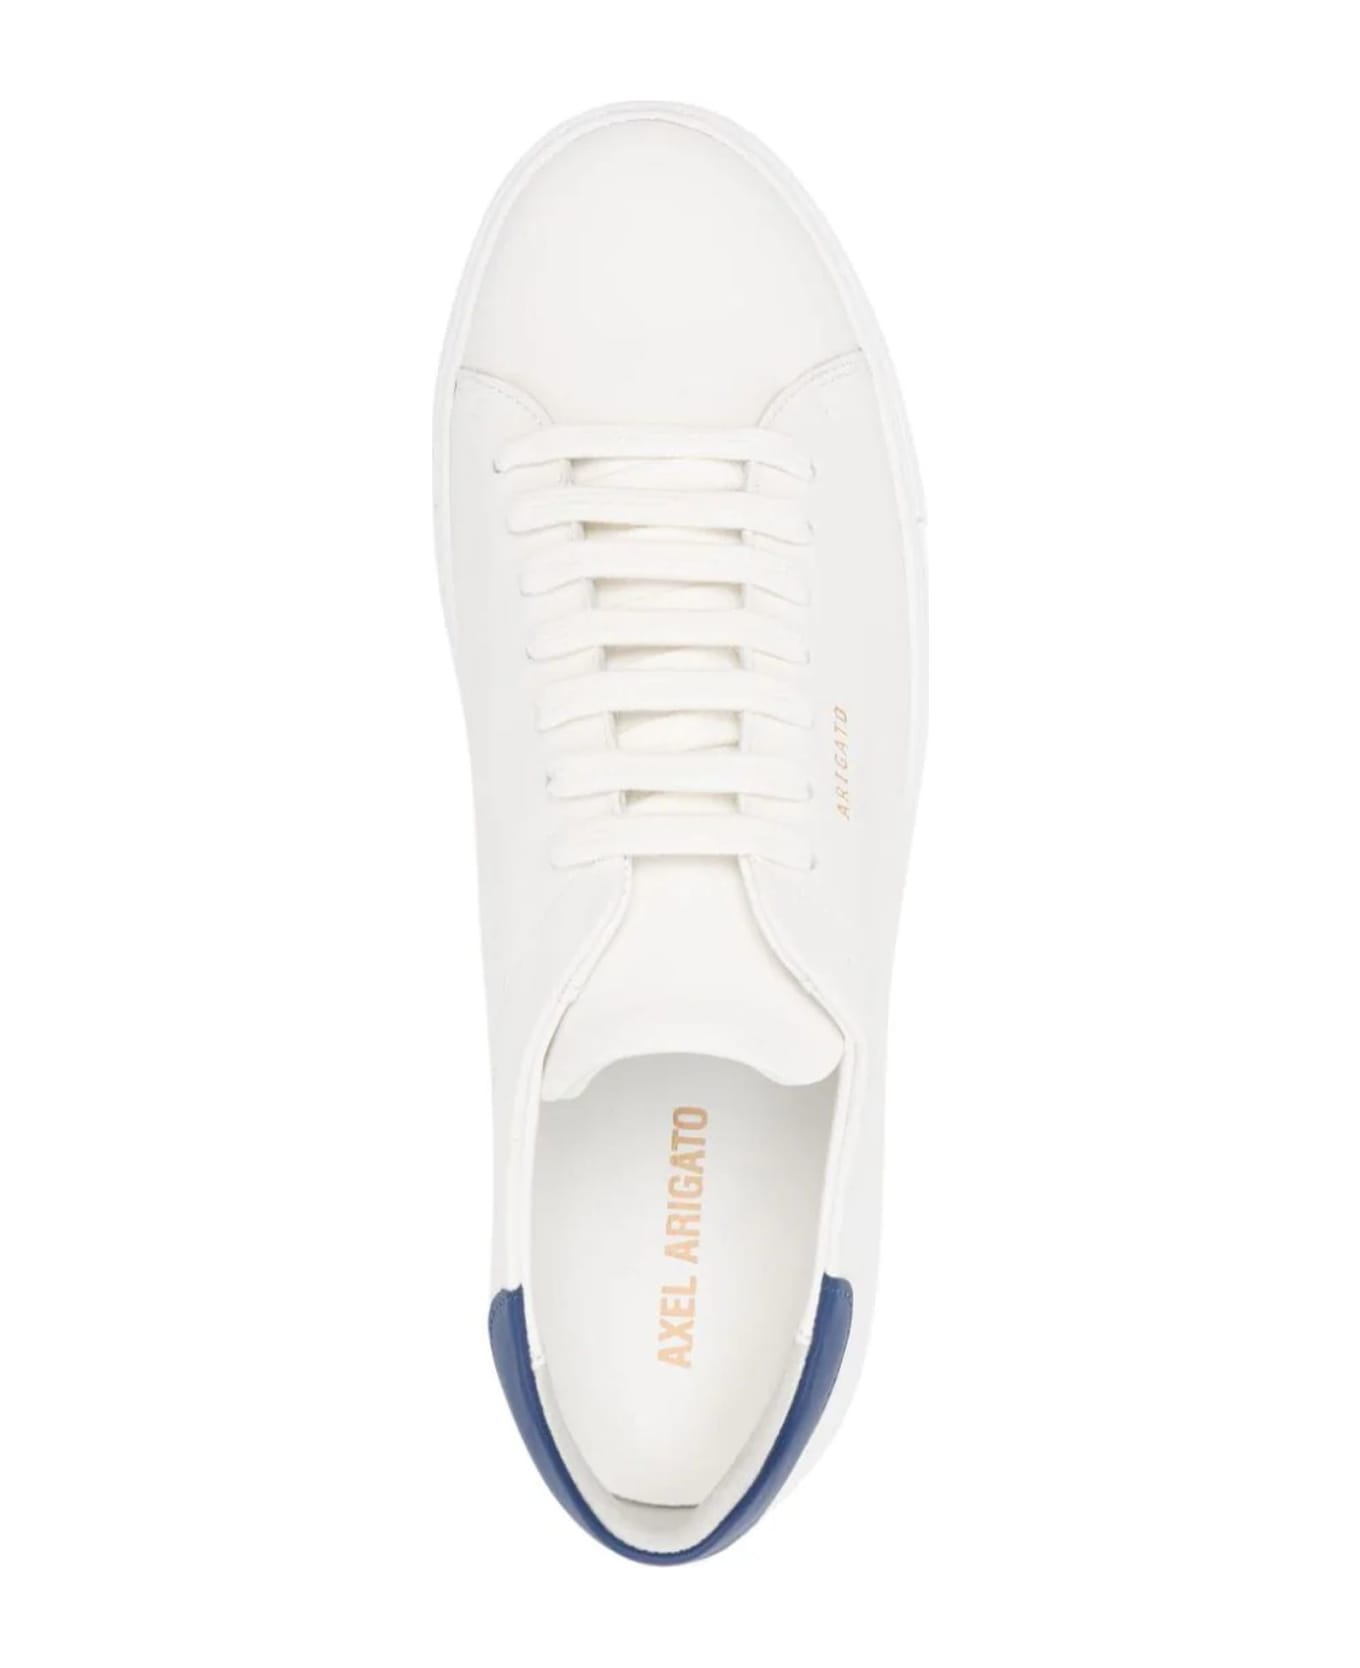 Axel Arigato White Clean 90 Leather Sneakers - White/navy